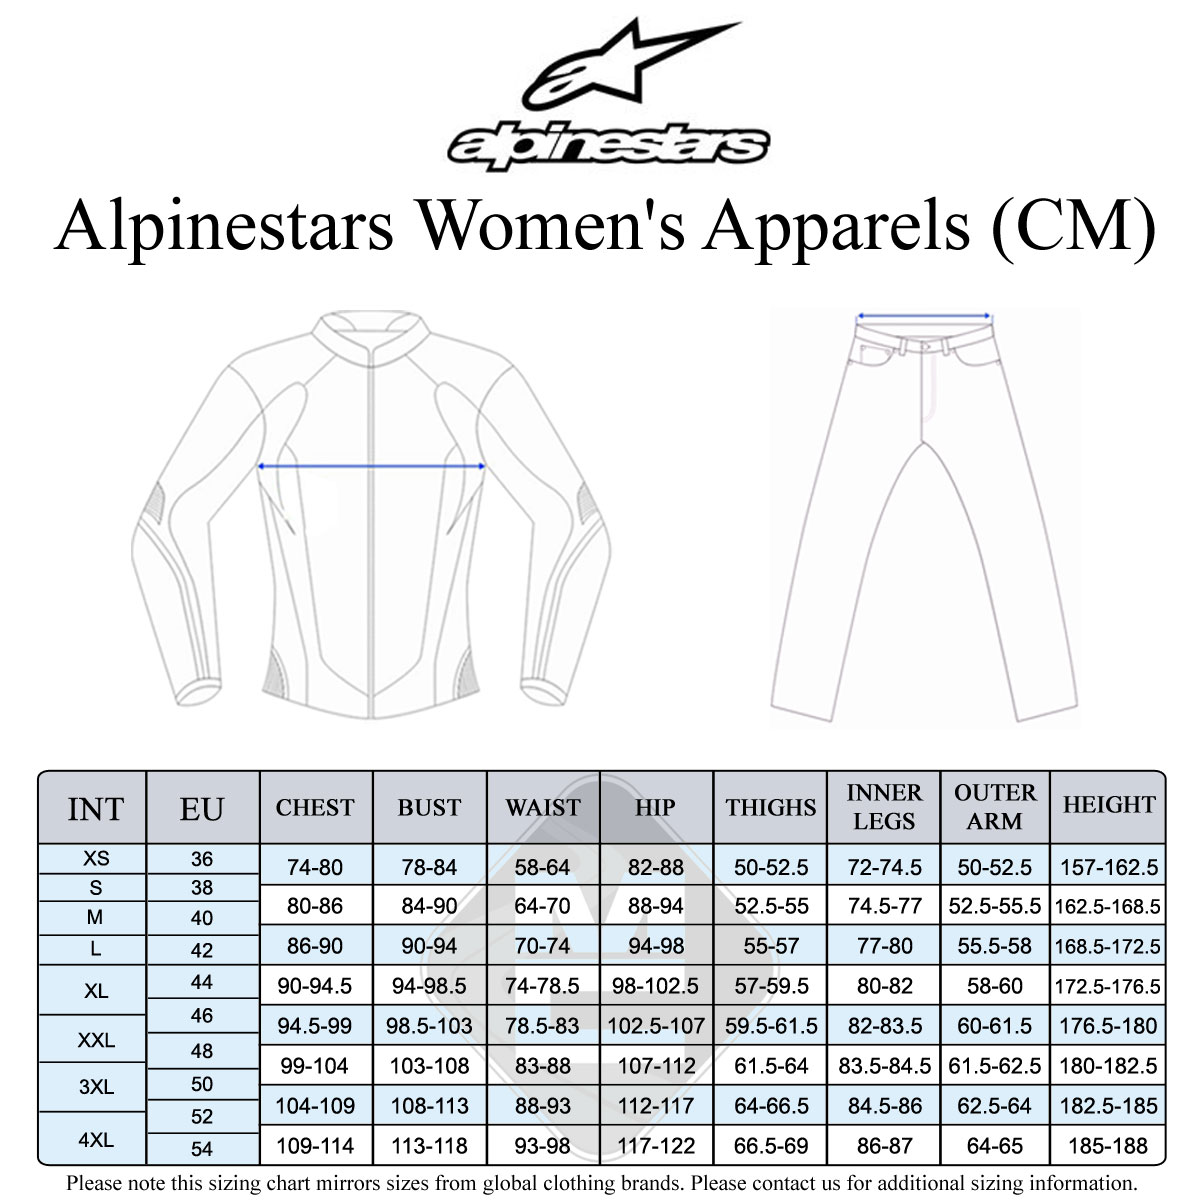 Alpinestars Women's Size Guide